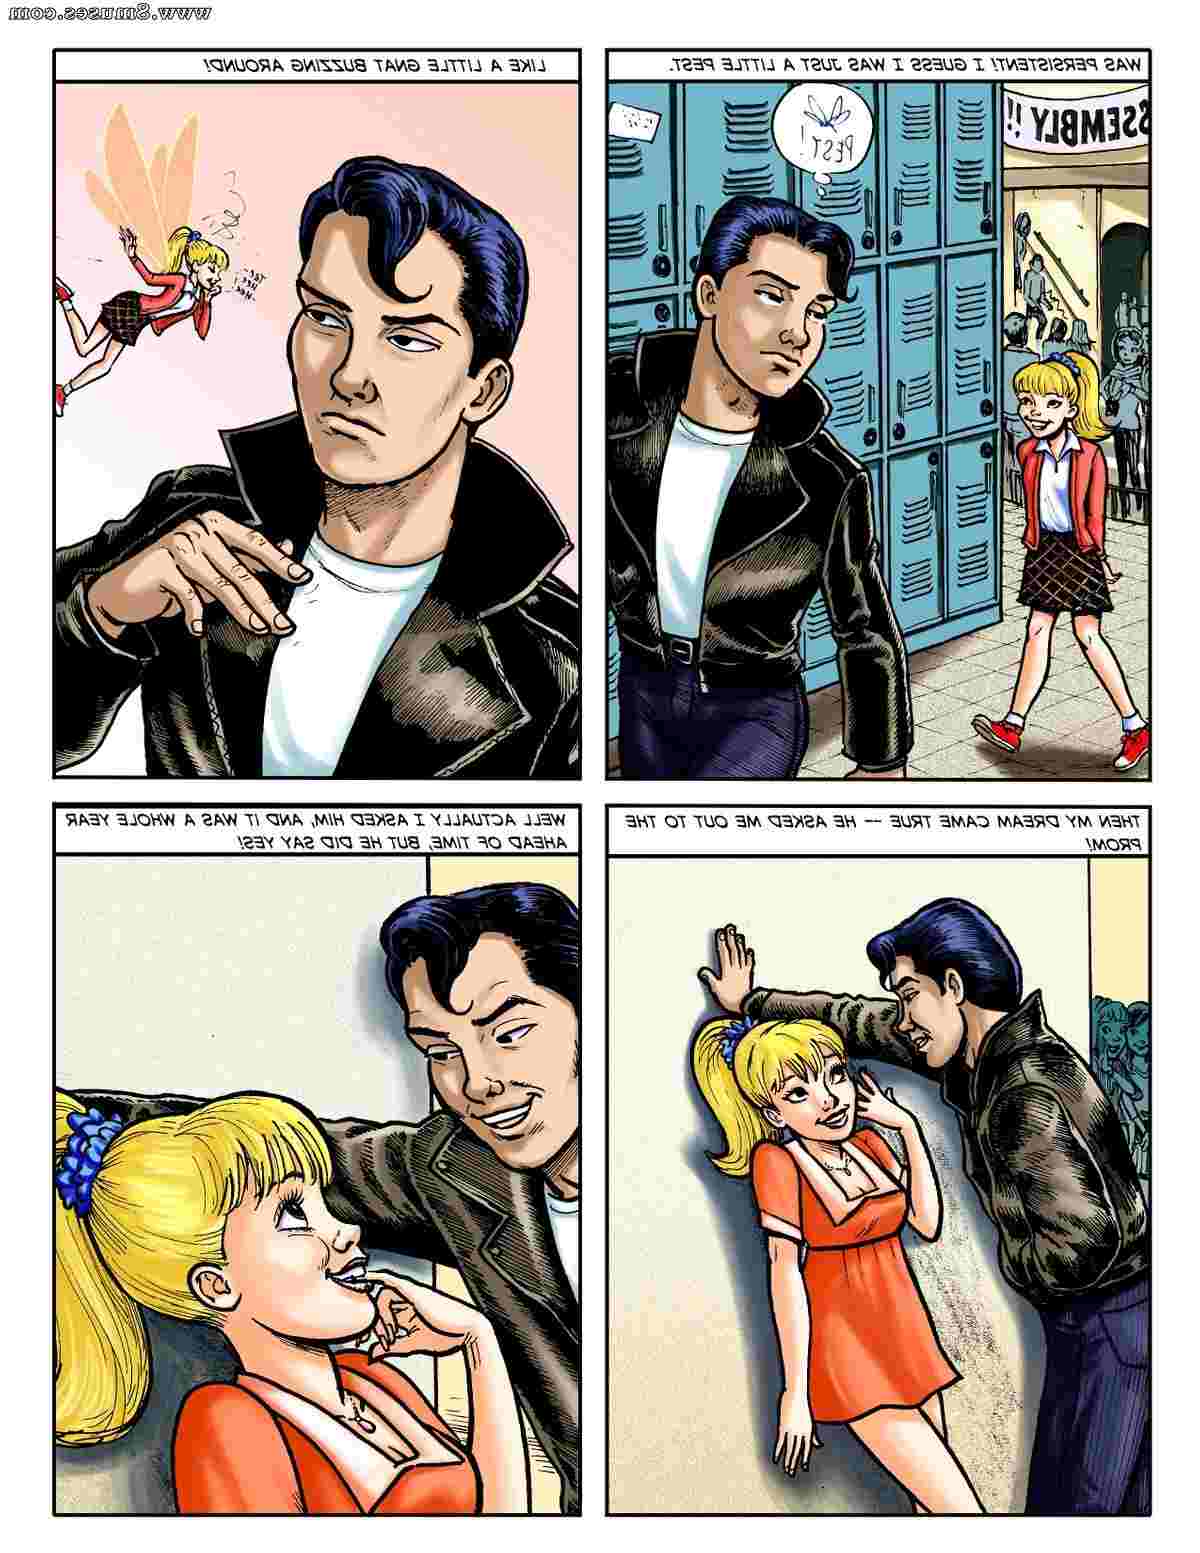 DreamTales-Comics/The-Big-Crush The_Big_Crush__8muses_-_Sex_and_Porn_Comics_5.jpg